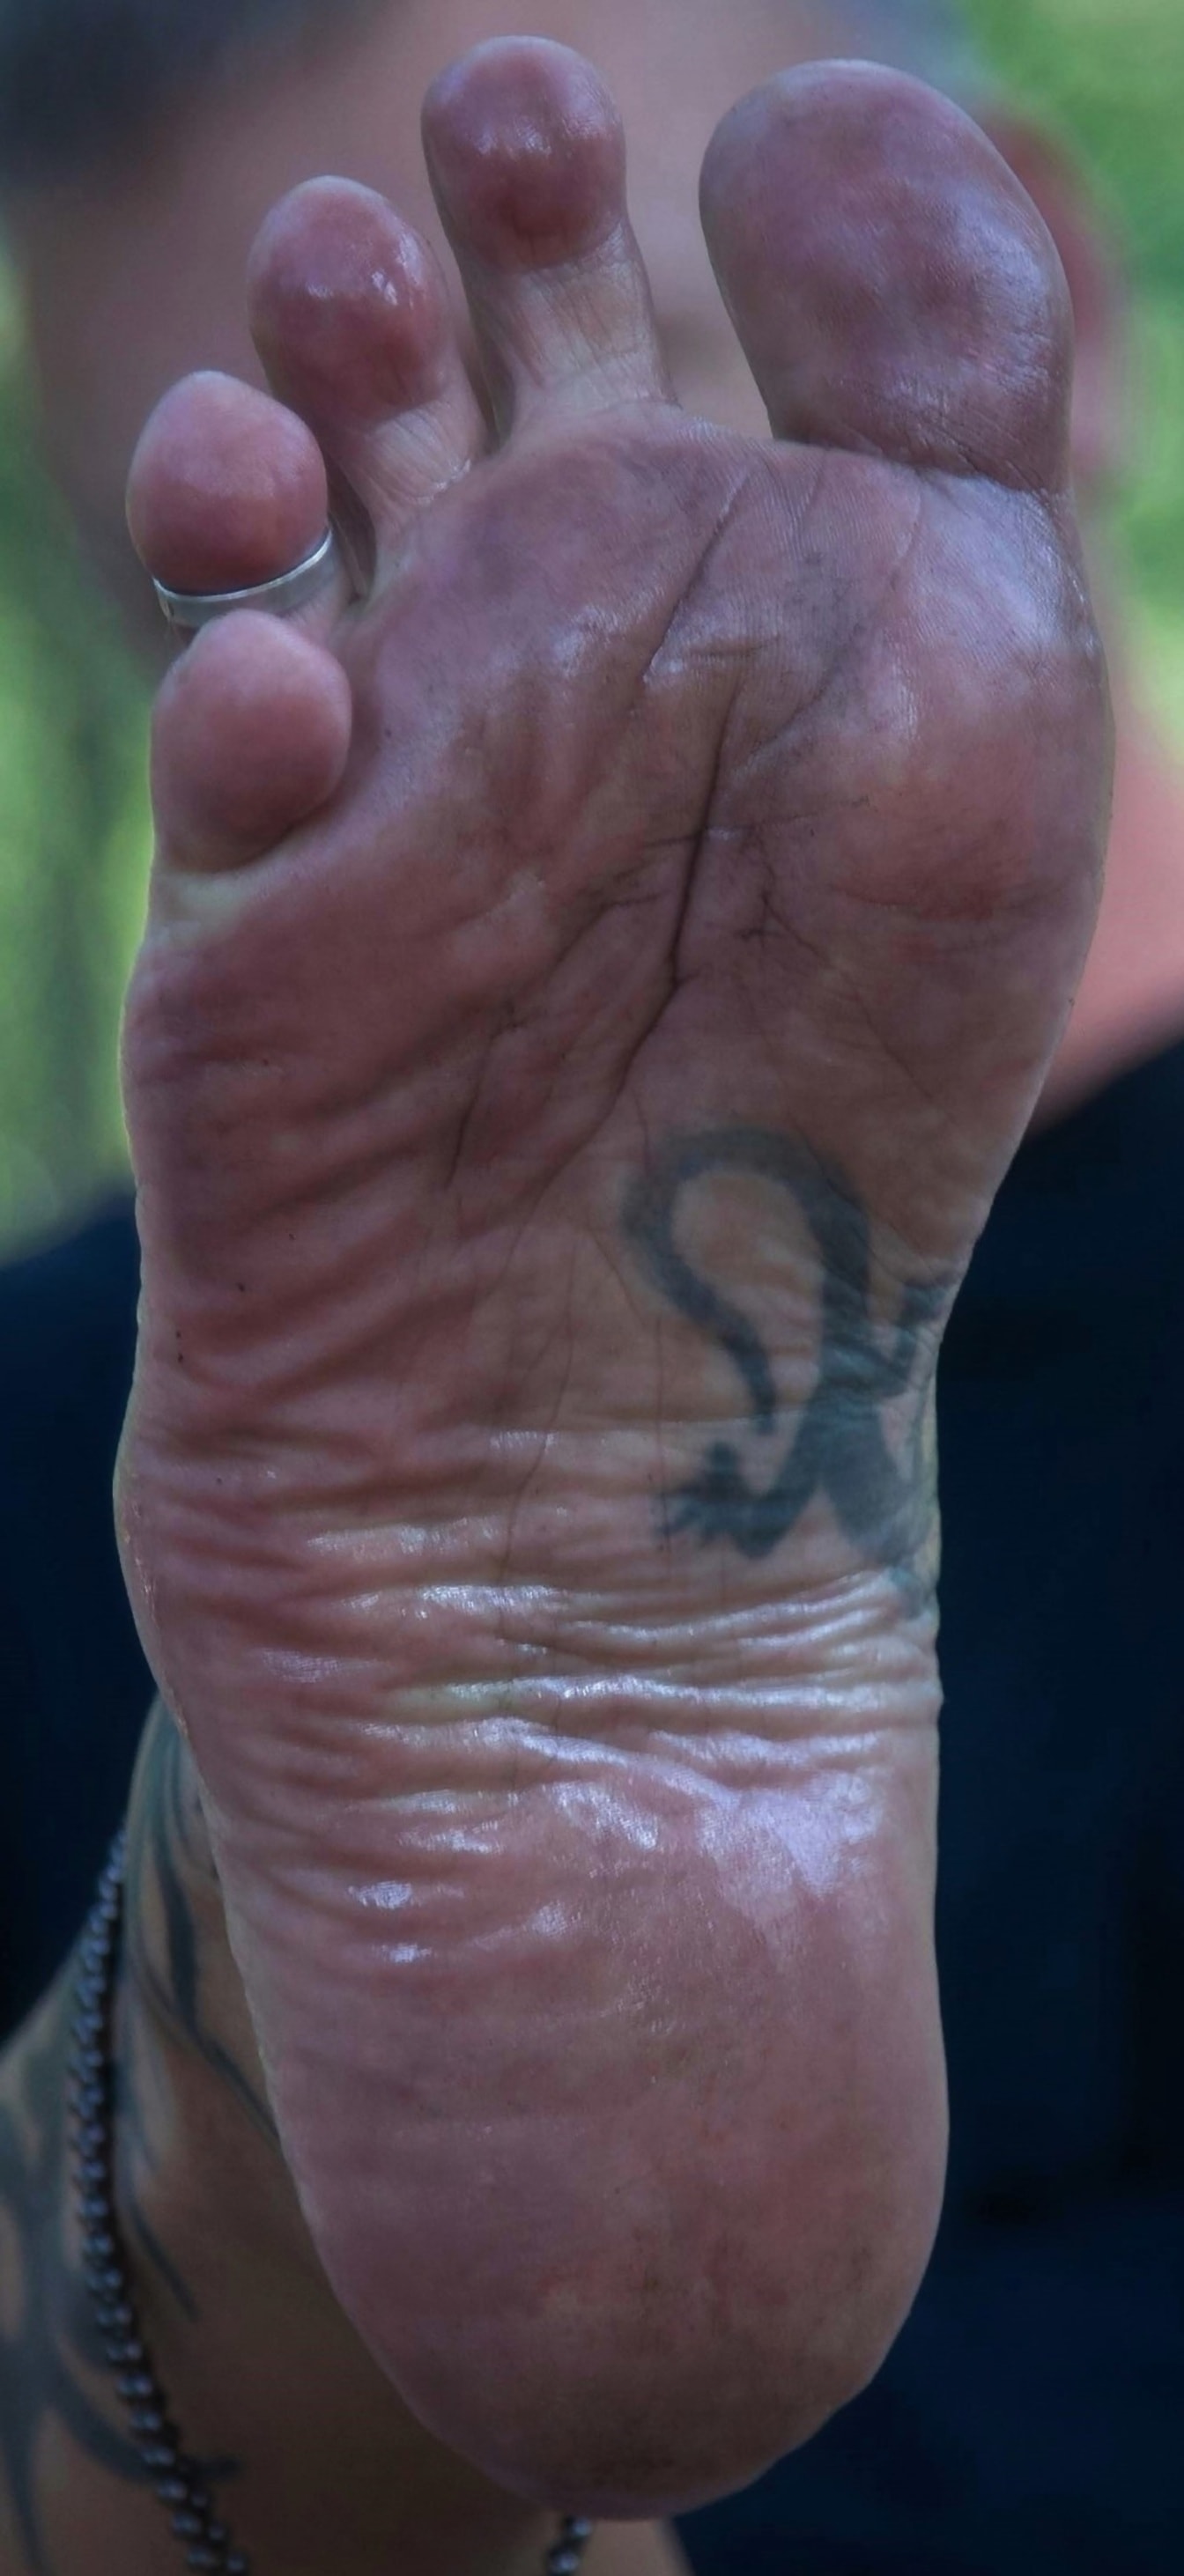 Barfuß Mann Nahaufnahme von schmutzigem Fuß mit Tätowierung und Ring